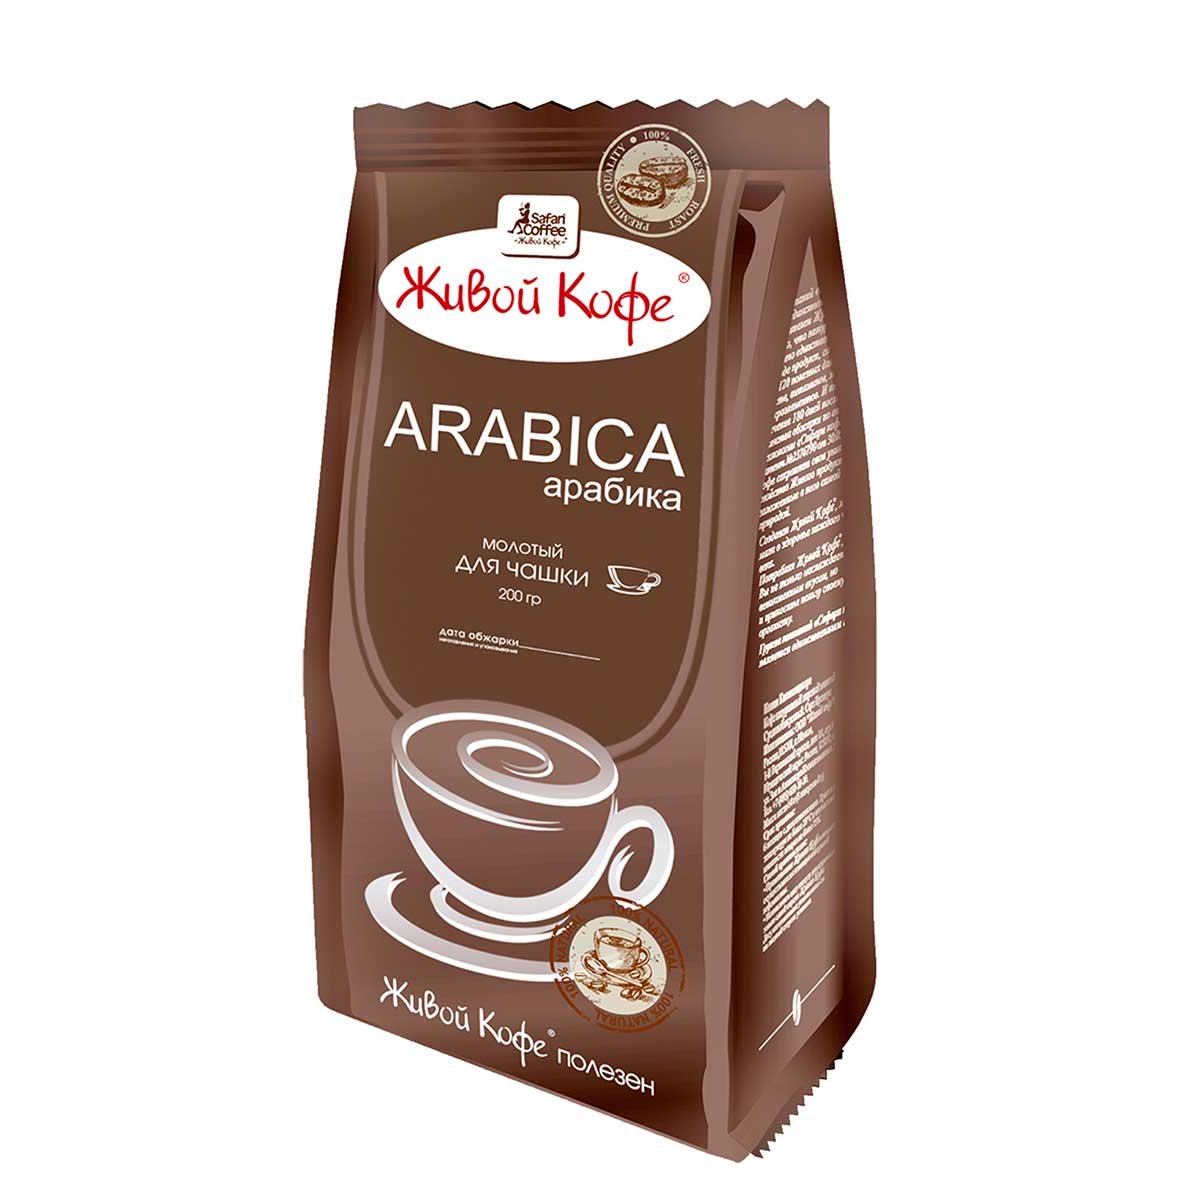 Молотый кофе 200г. Кофе Arabica молотый живой 200гр. Кофе живой кофе, Арабика, молотый, 200г. Живой кофе Арабика молотый 200г. Живой кофе Арабика натур молотый 200.